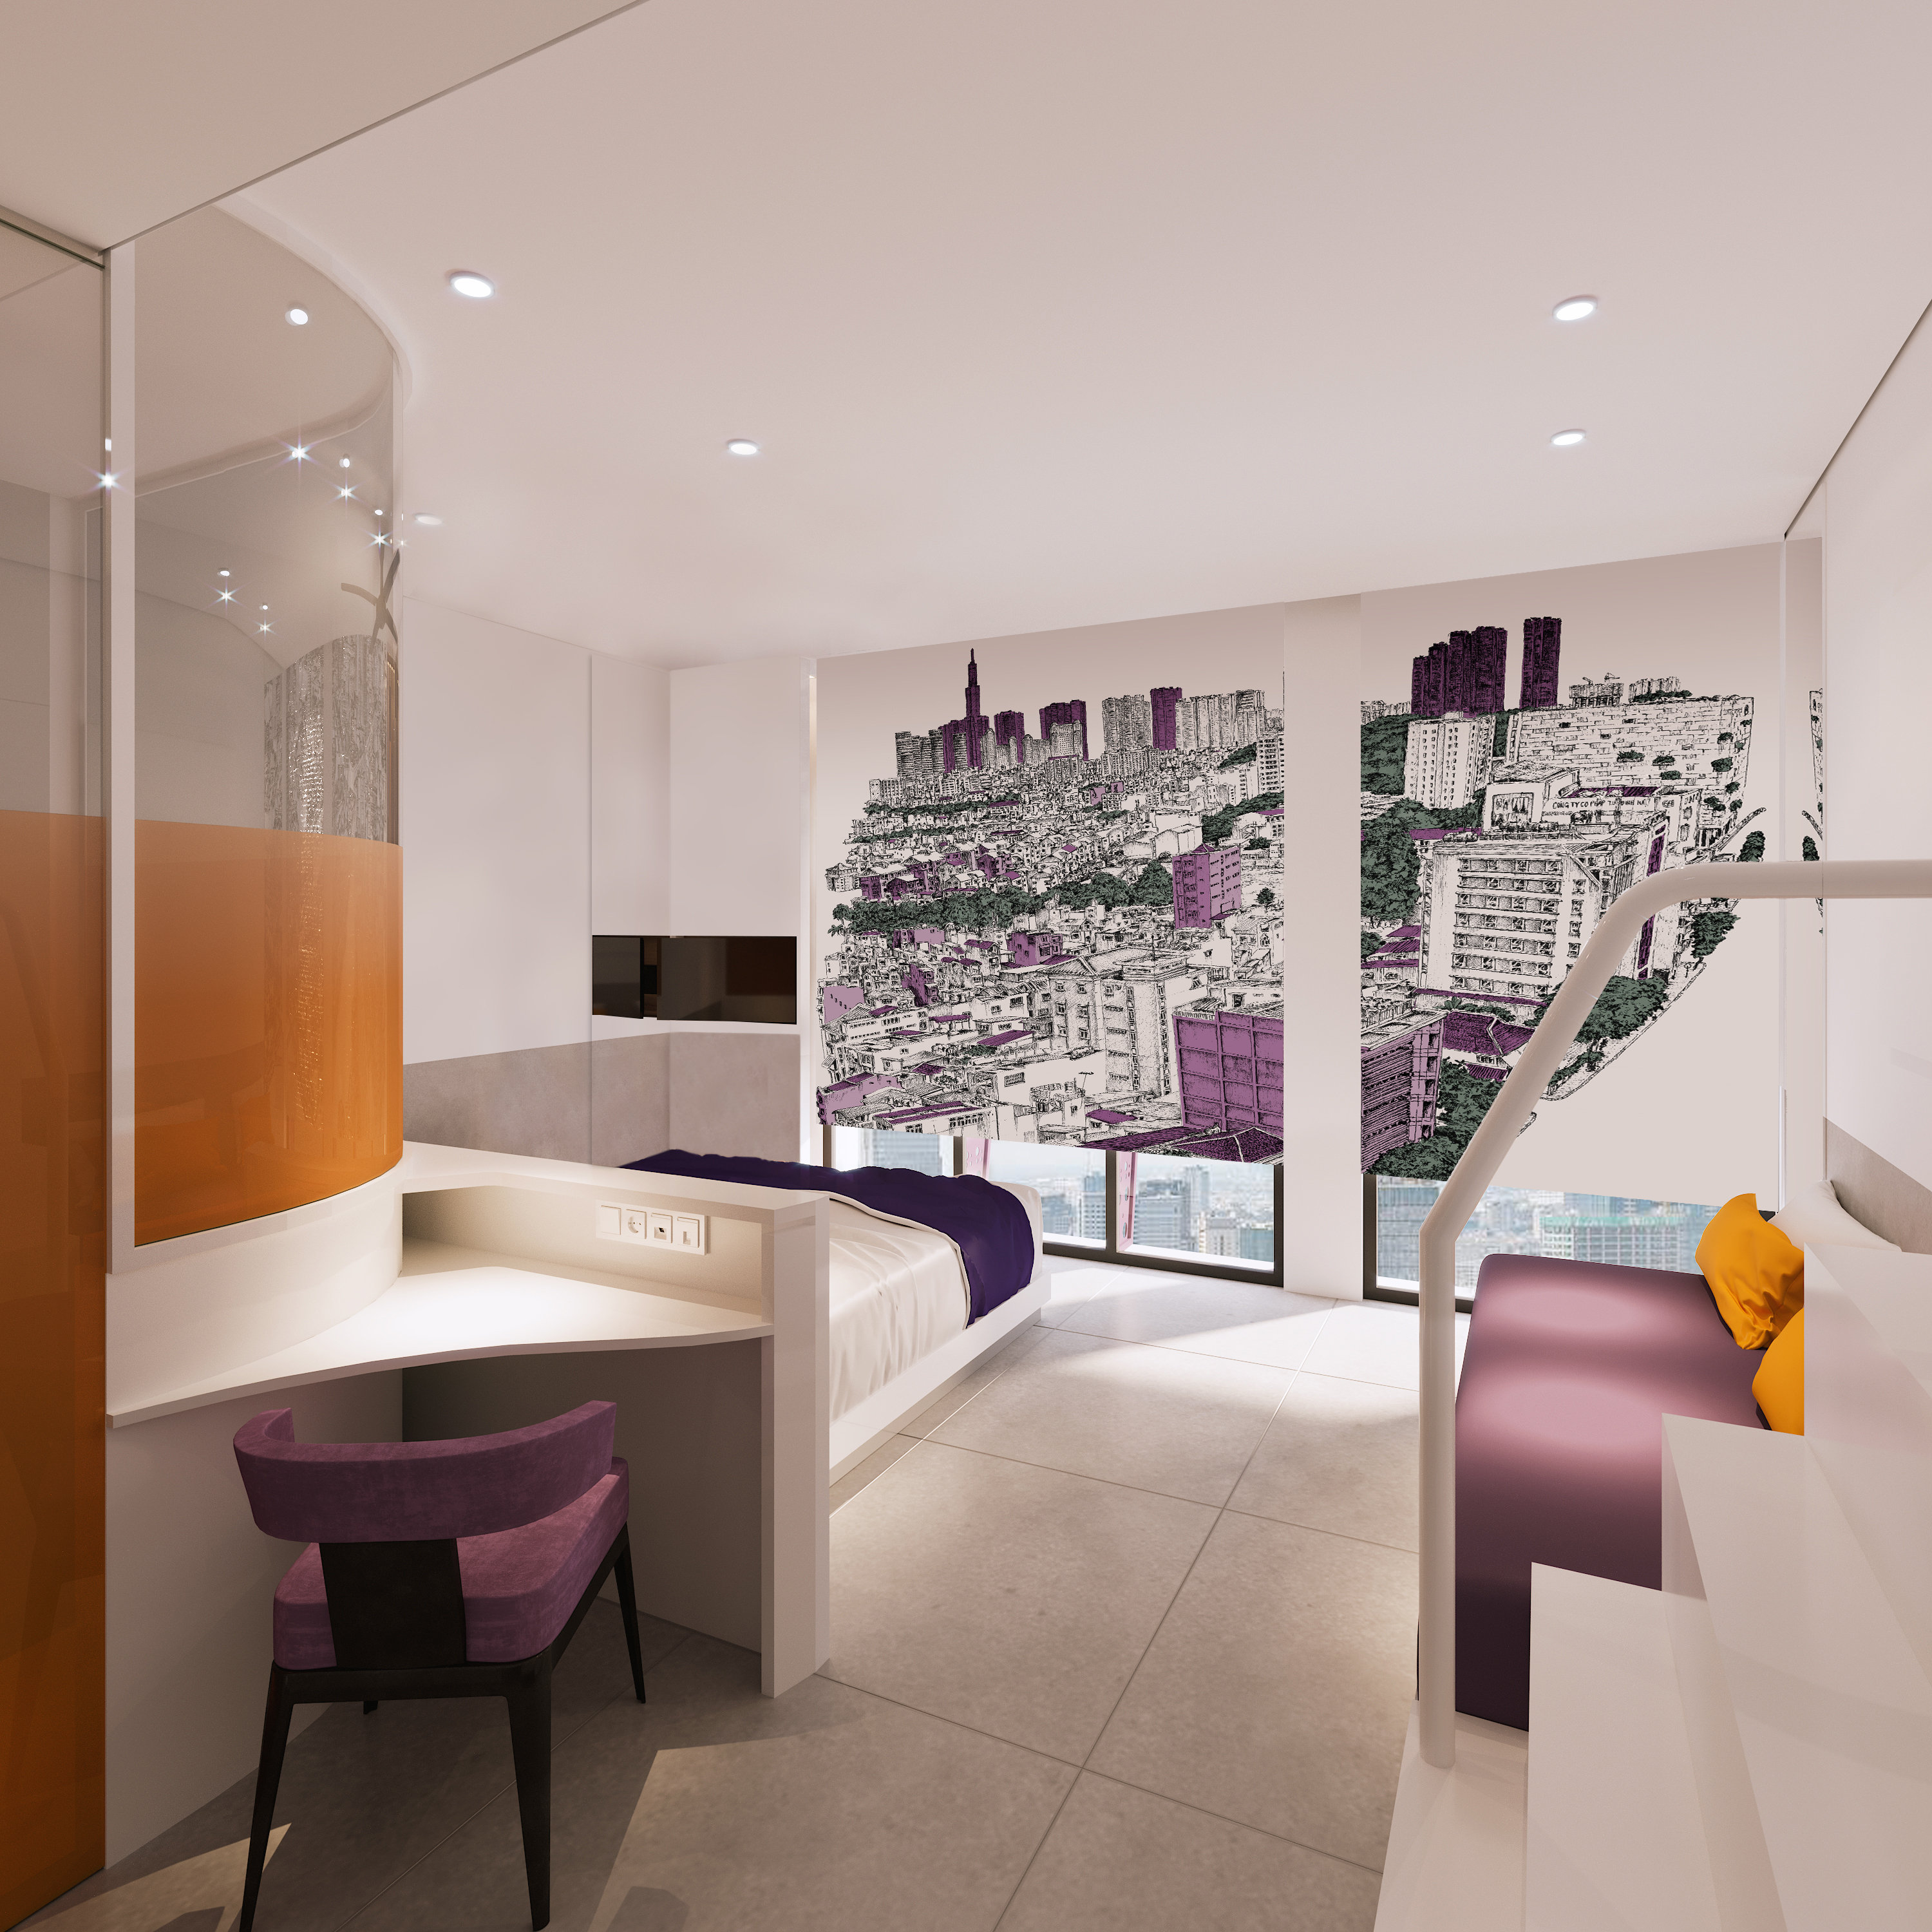 Hệ thống phòng ốc tại Wink Hotels được thiết kế nhiều màu sắc, giàu năng lượng và đầy đủ công năng cần thiết.